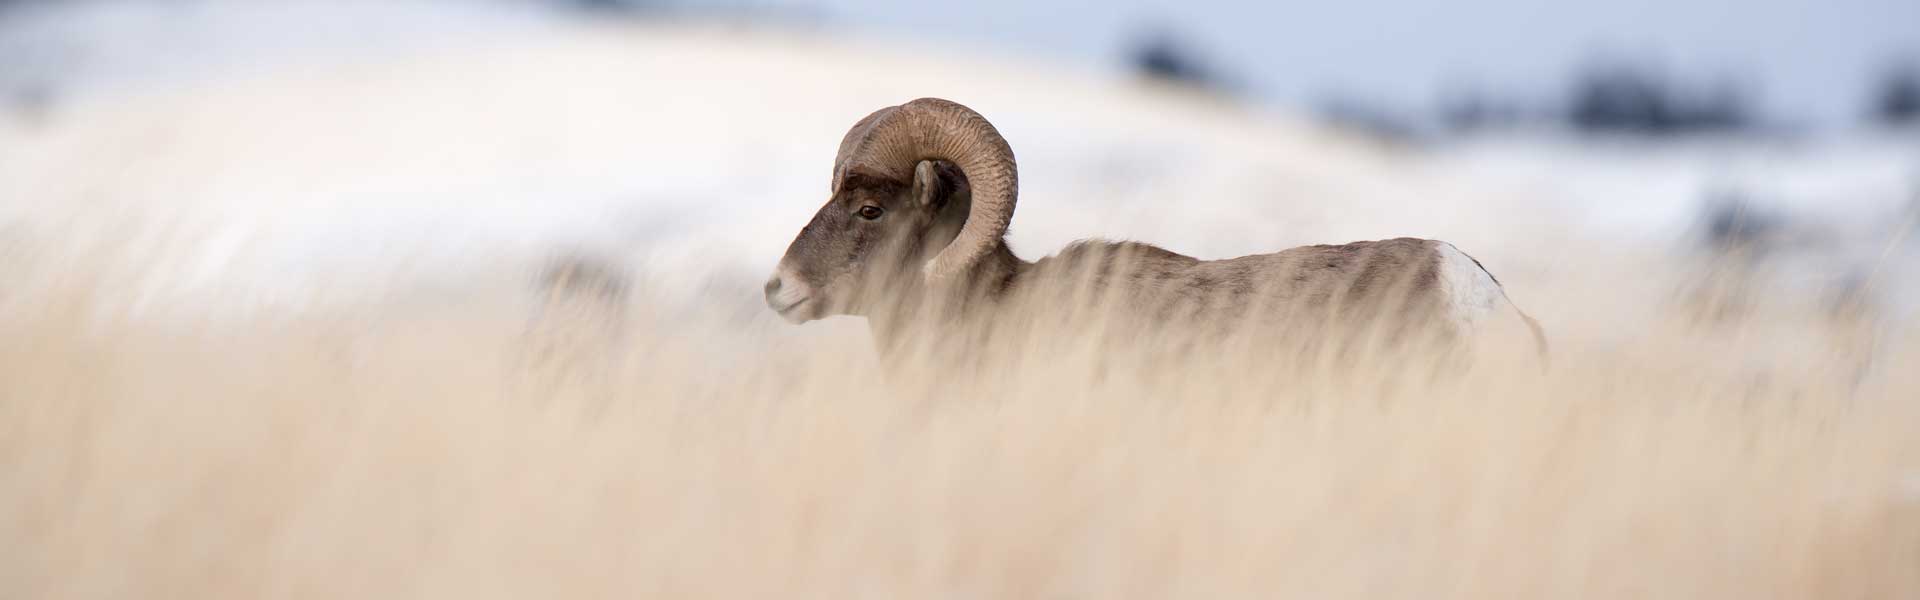 A bighorn sheep in tall grass.